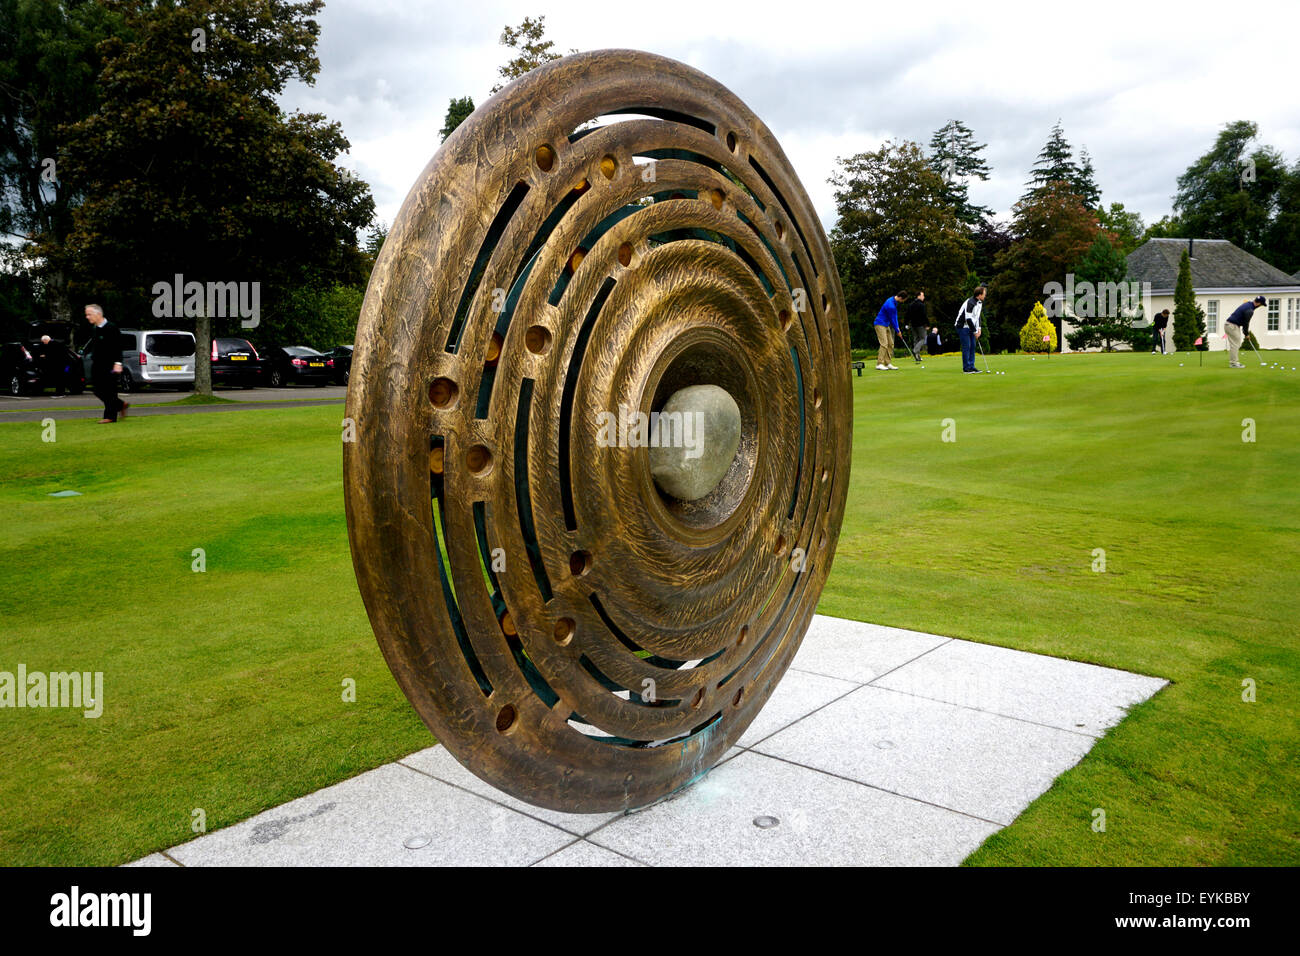 Il recentemente installata a 2 metri di altezza in bronzo commemorativo round roundel scultura che commemora l'hosting del 2014 Ryder Cup. Foto Stock